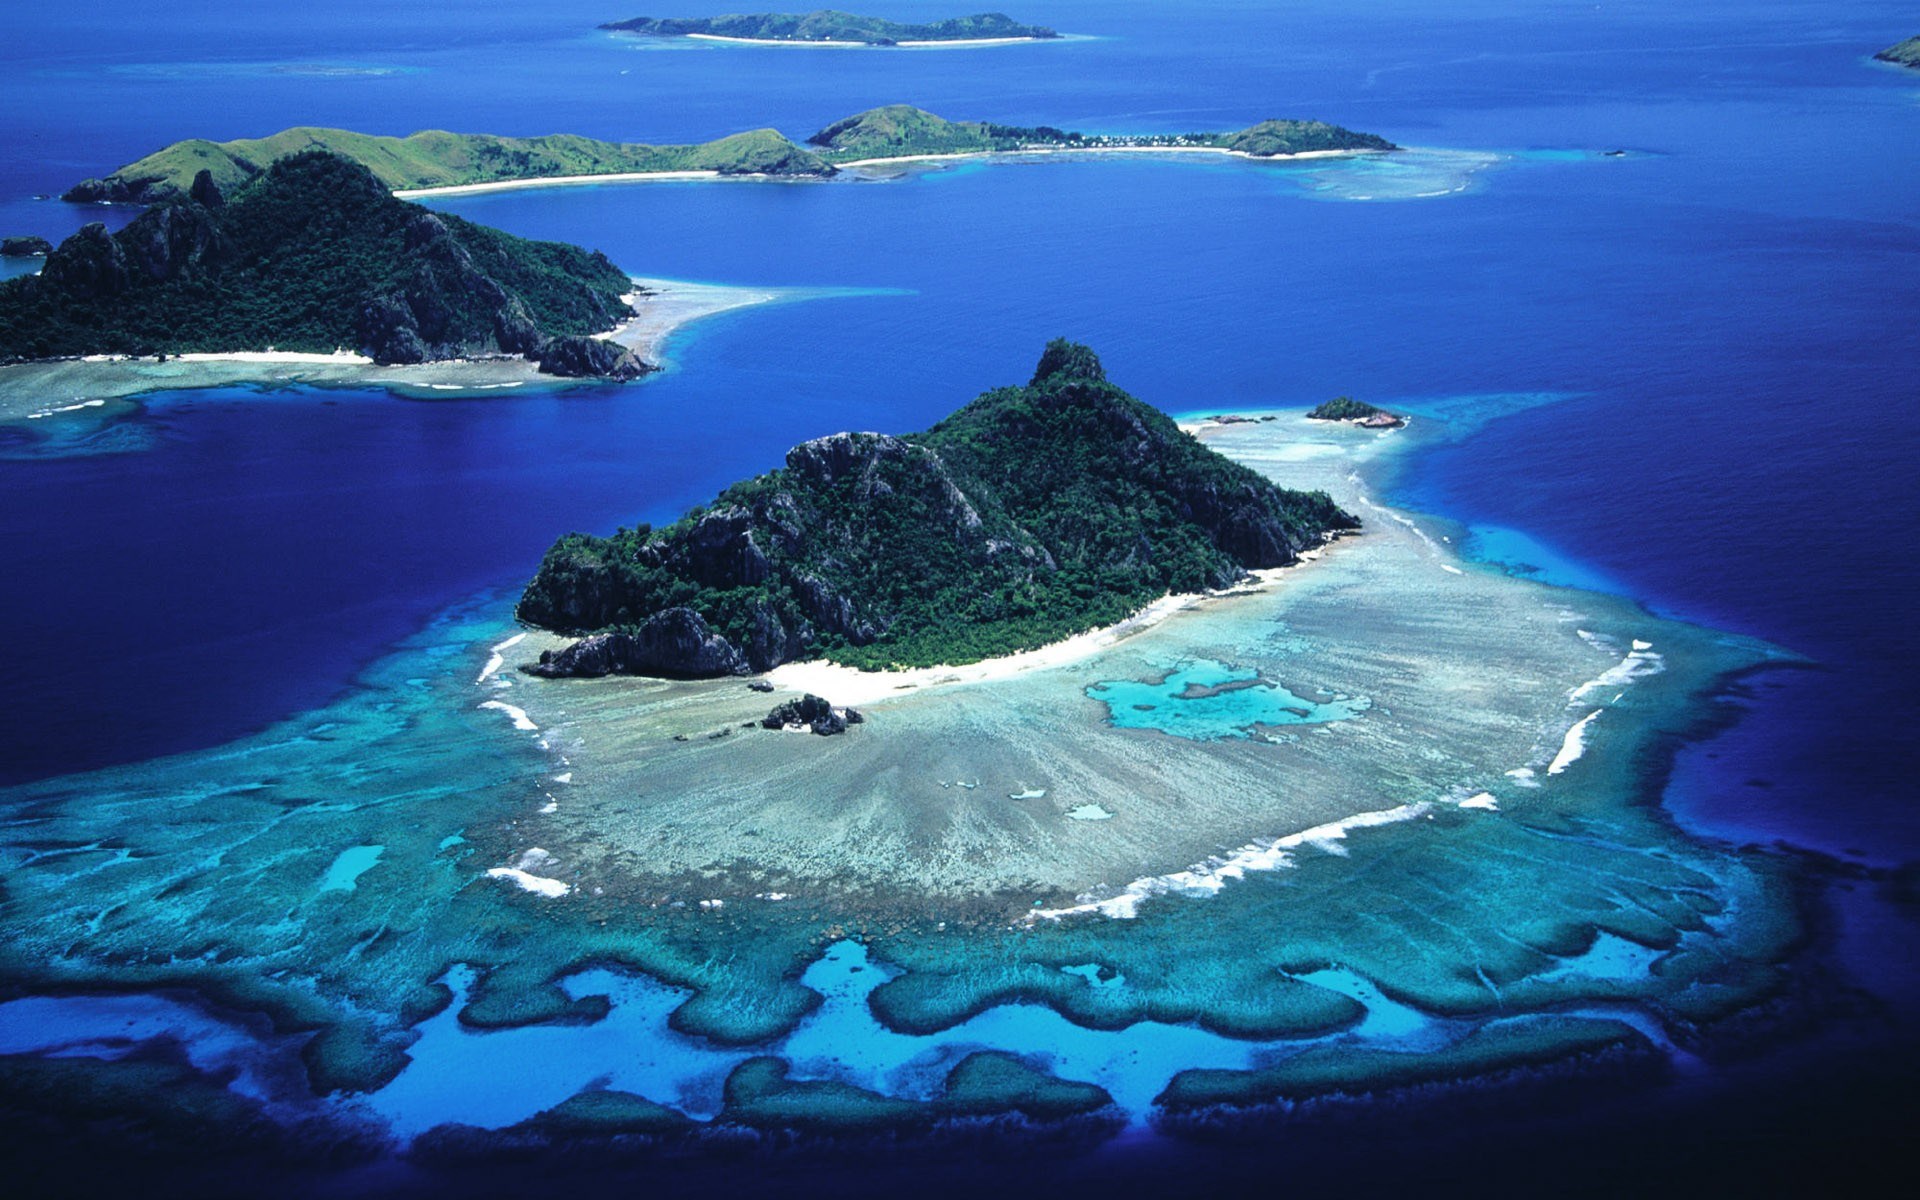 Укажите острова расположенные в тихом океане. Остров Монурики Фиджи. Остров Вакайя, Фиджи. Галапагосский архипелаг. Вануа Леву Фиджи.